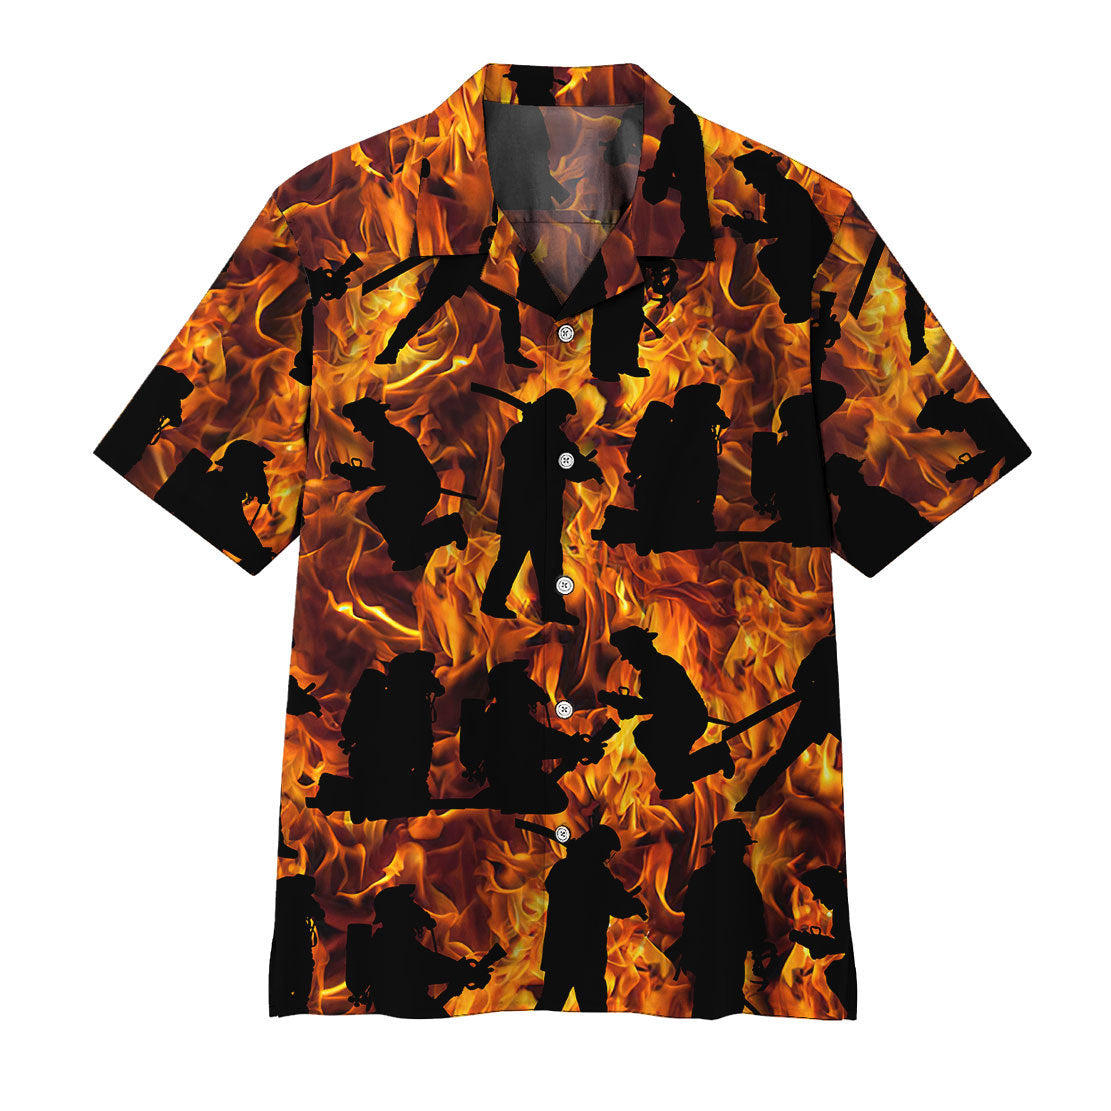 Gearhumans 3D Fire Fighter Hawaii Shirt